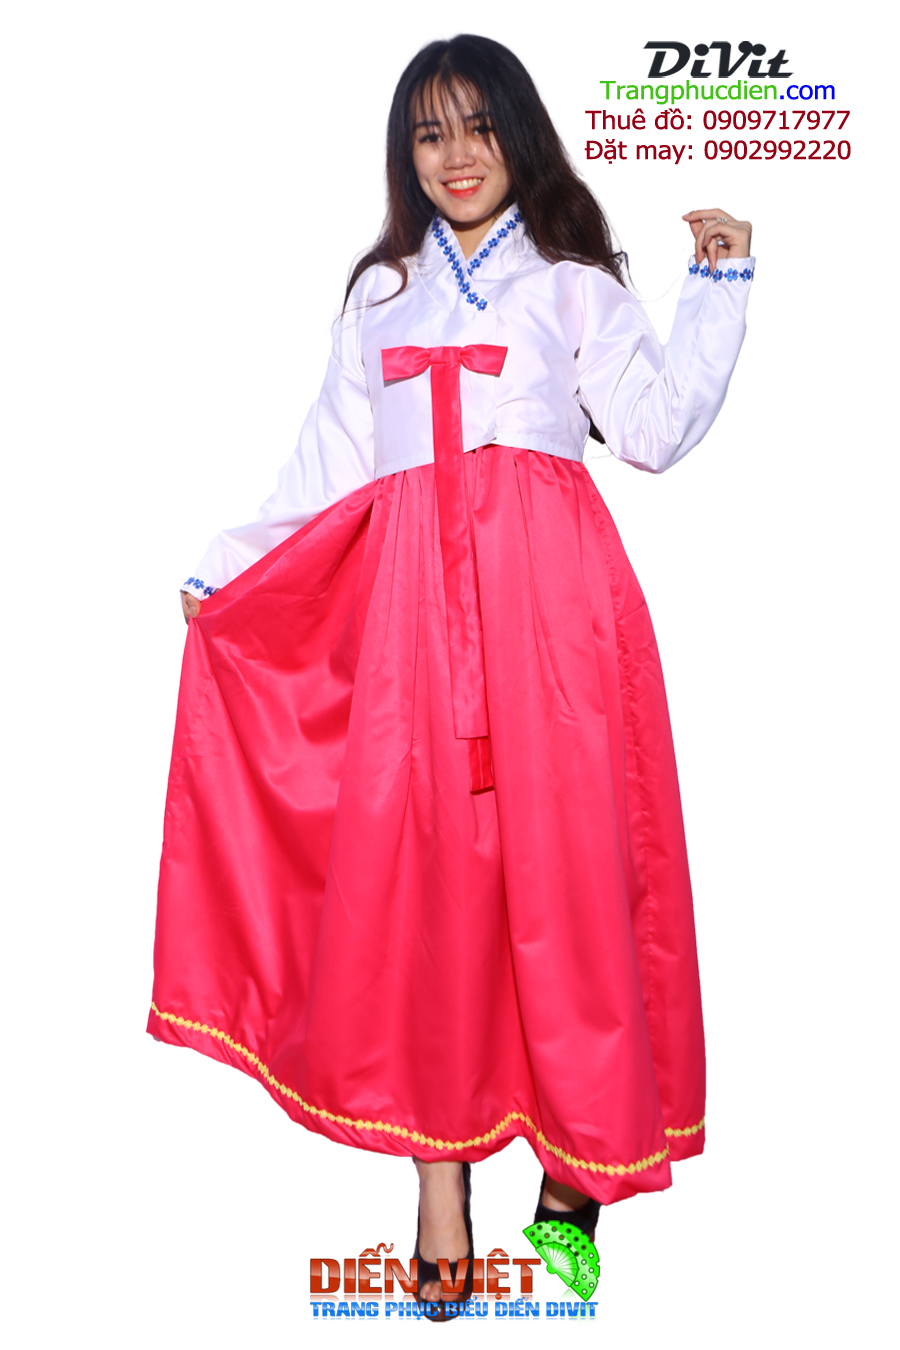 Trang phục truyền thống của Hàn Quốc - HANBOK - Xinvisaquocte